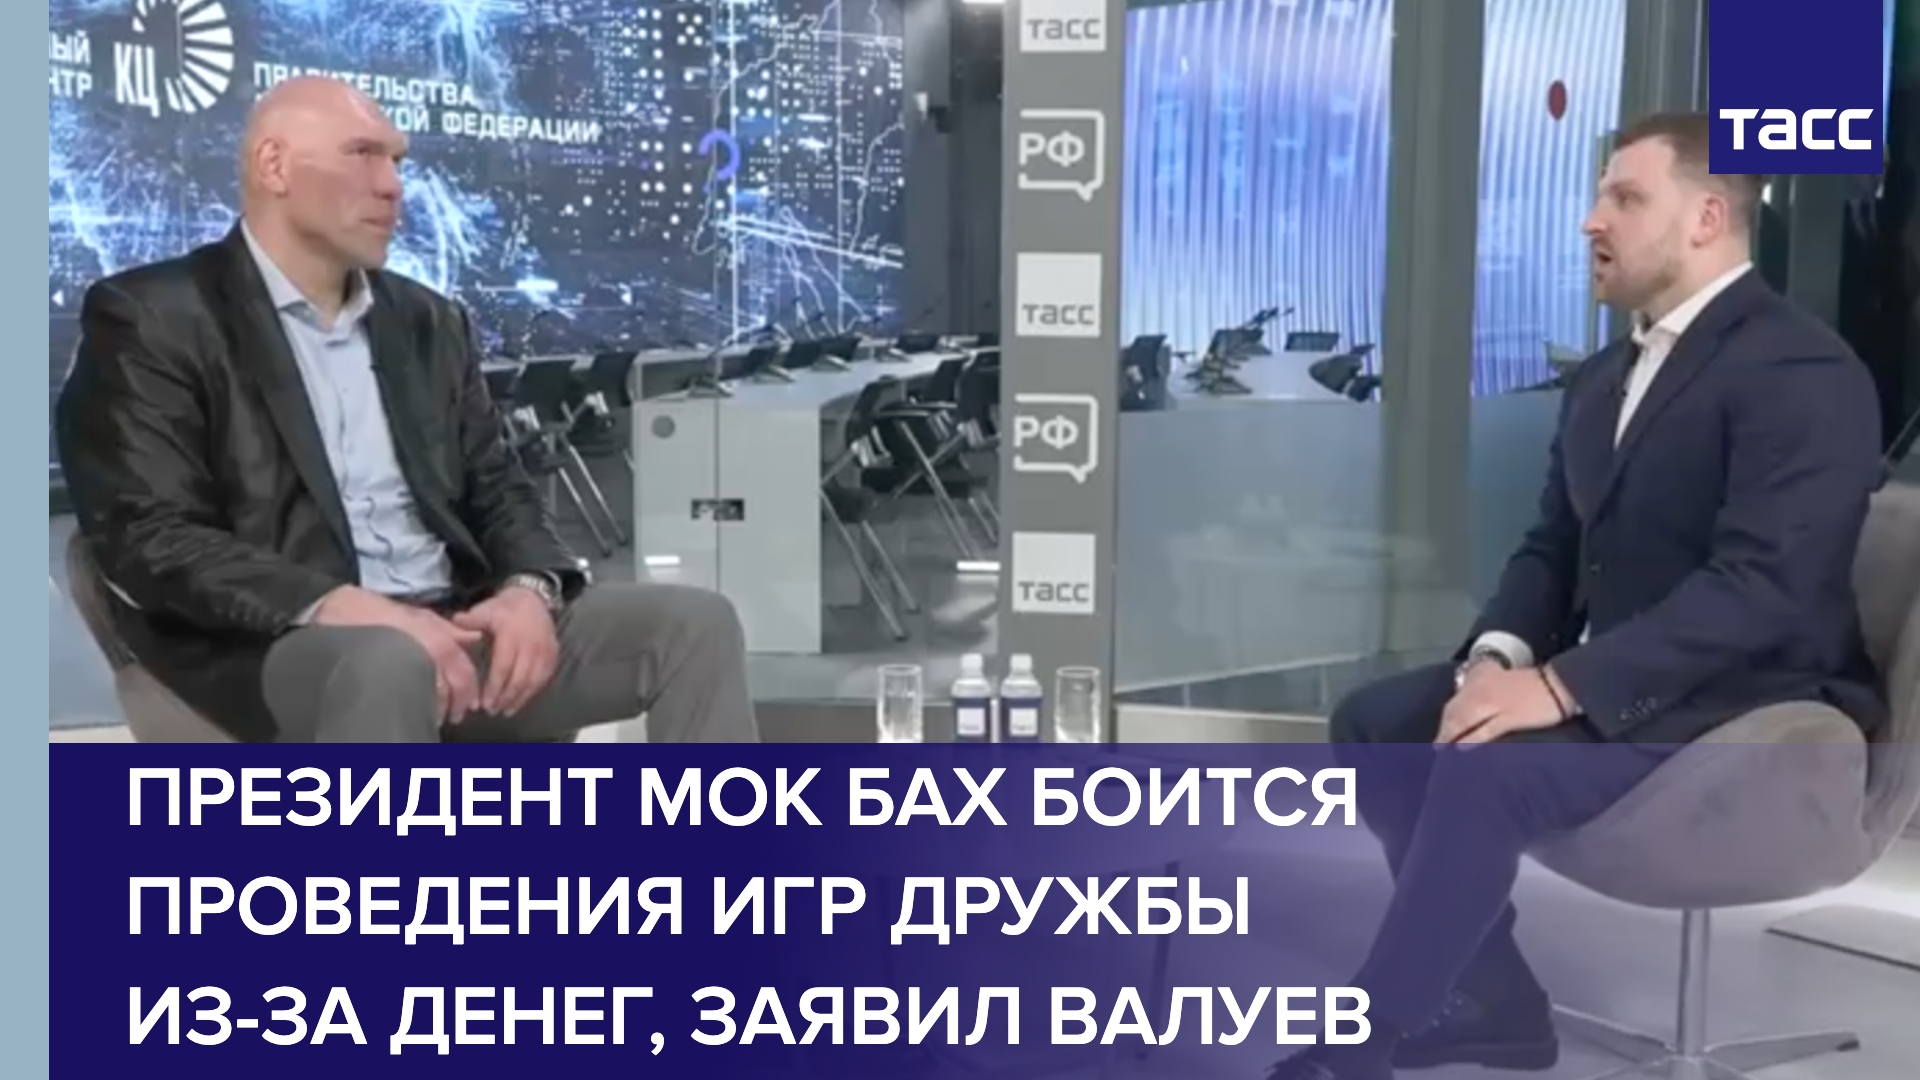 Валуев заявил, что президент МОК Бах боится проведения Игр дружбы из-за денег